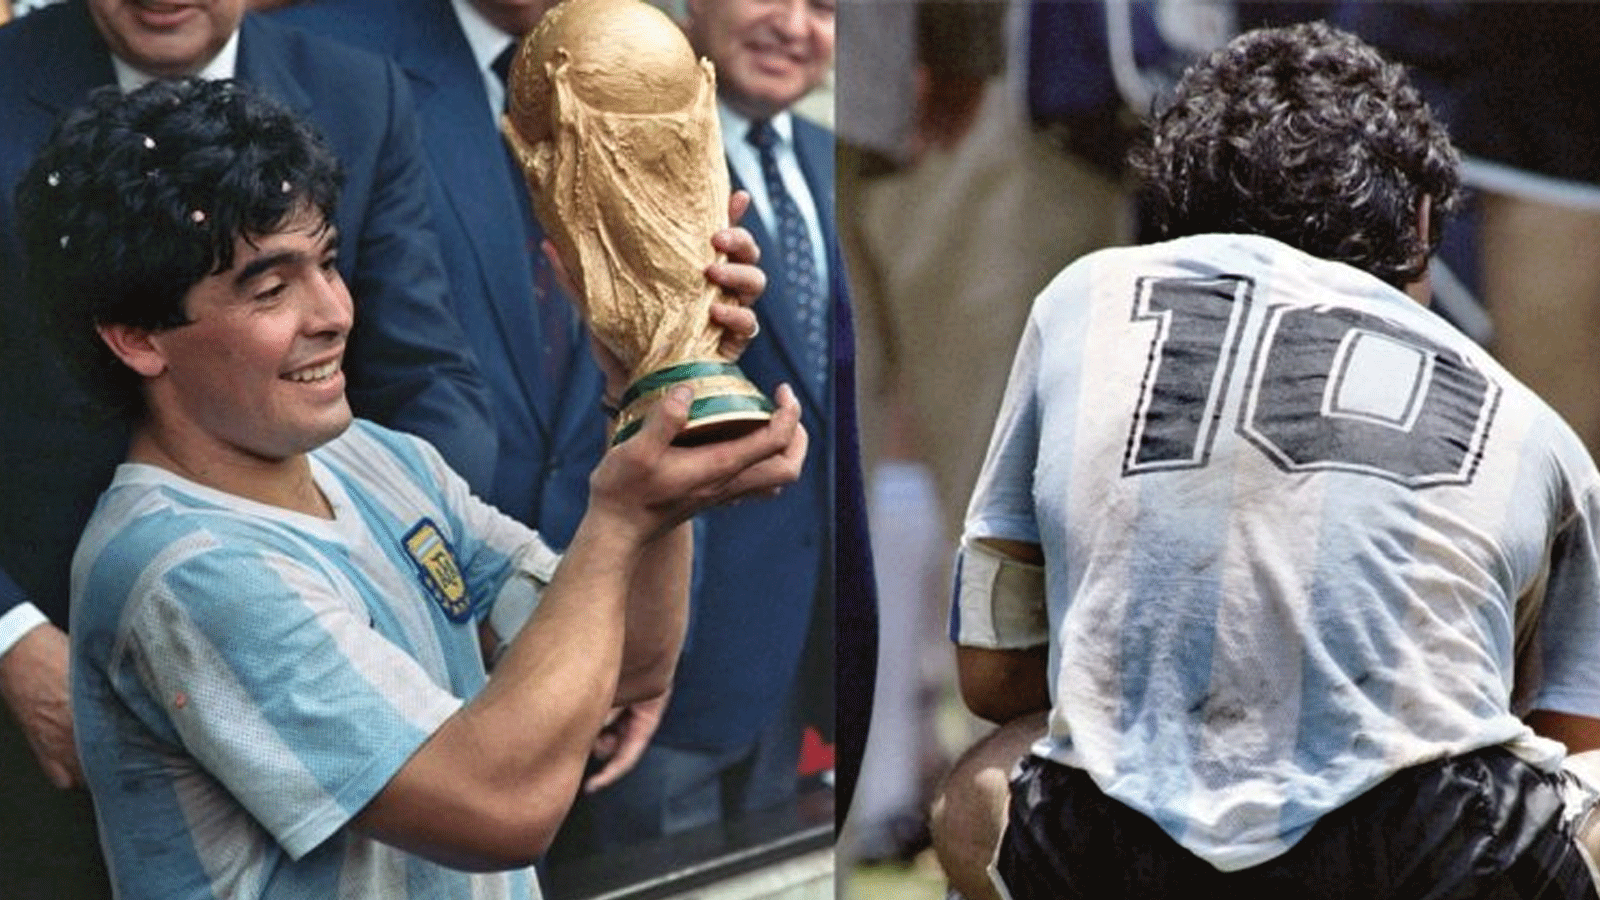 صورة مجمعة للاعب الأرجنتيني الراحل دييغو مارادونا الأولى يرتدي قميصه خلال المباراة والثانية وهو يرفع كأس العالم عام 1986.